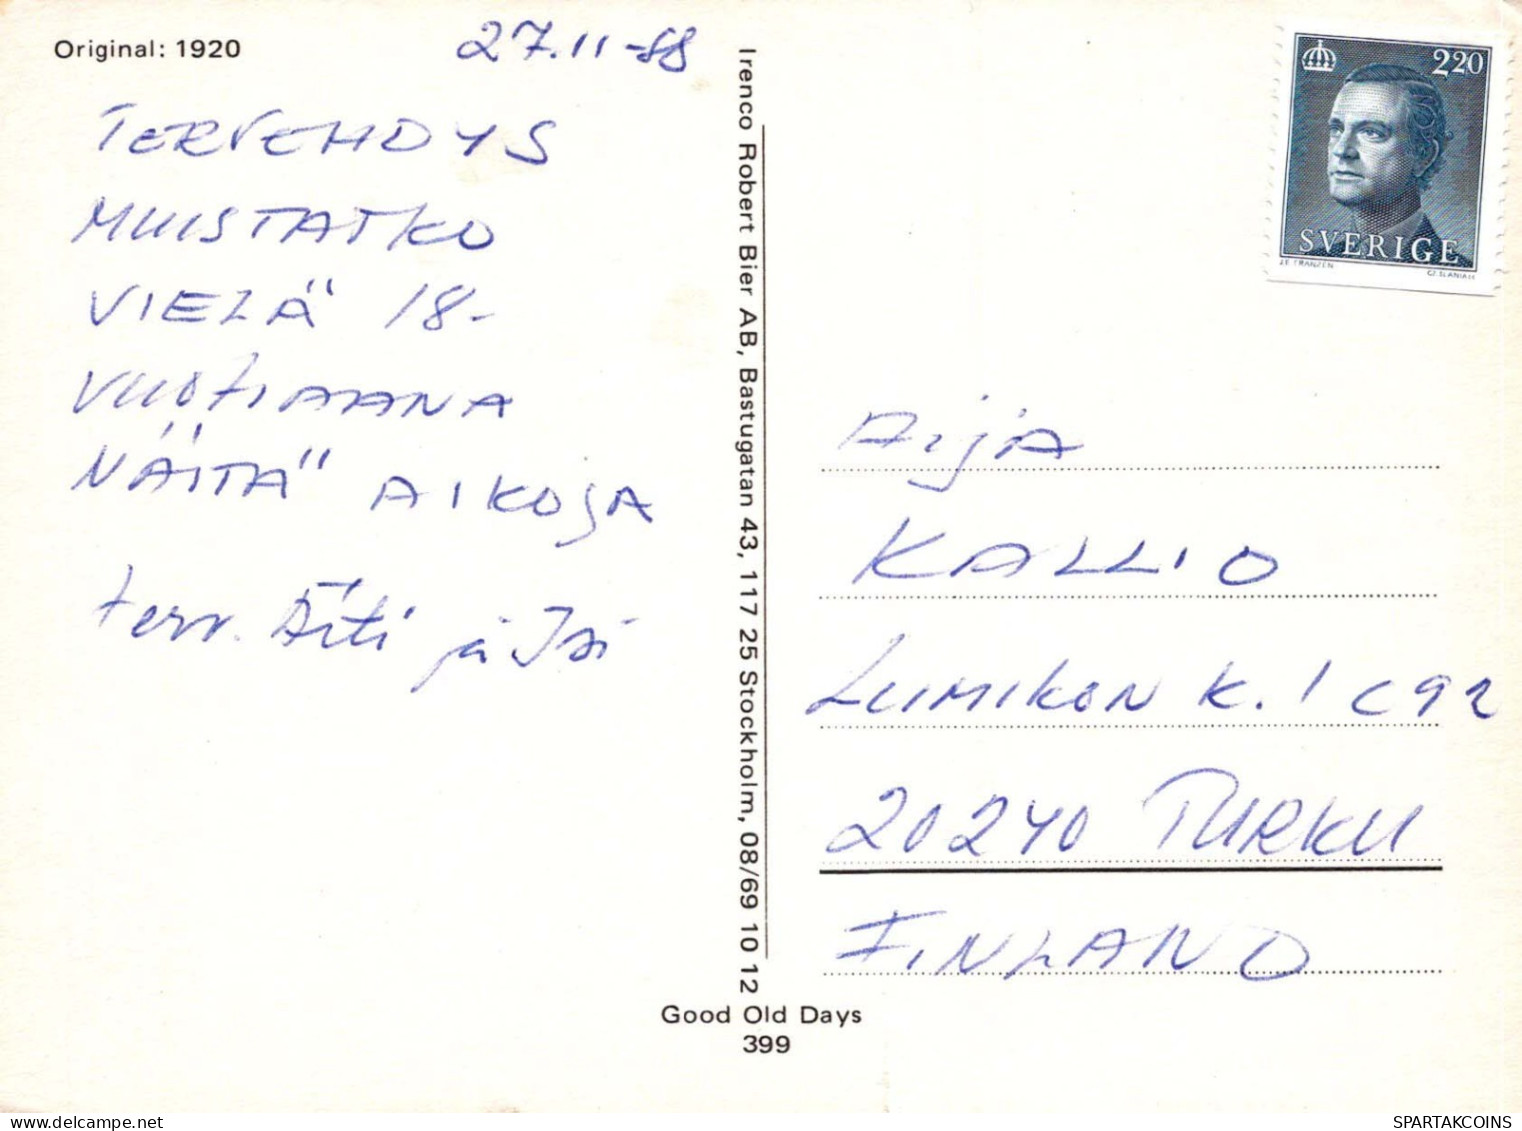 NIÑOS HUMOR Vintage Tarjeta Postal CPSM #PBV309.A - Humorous Cards